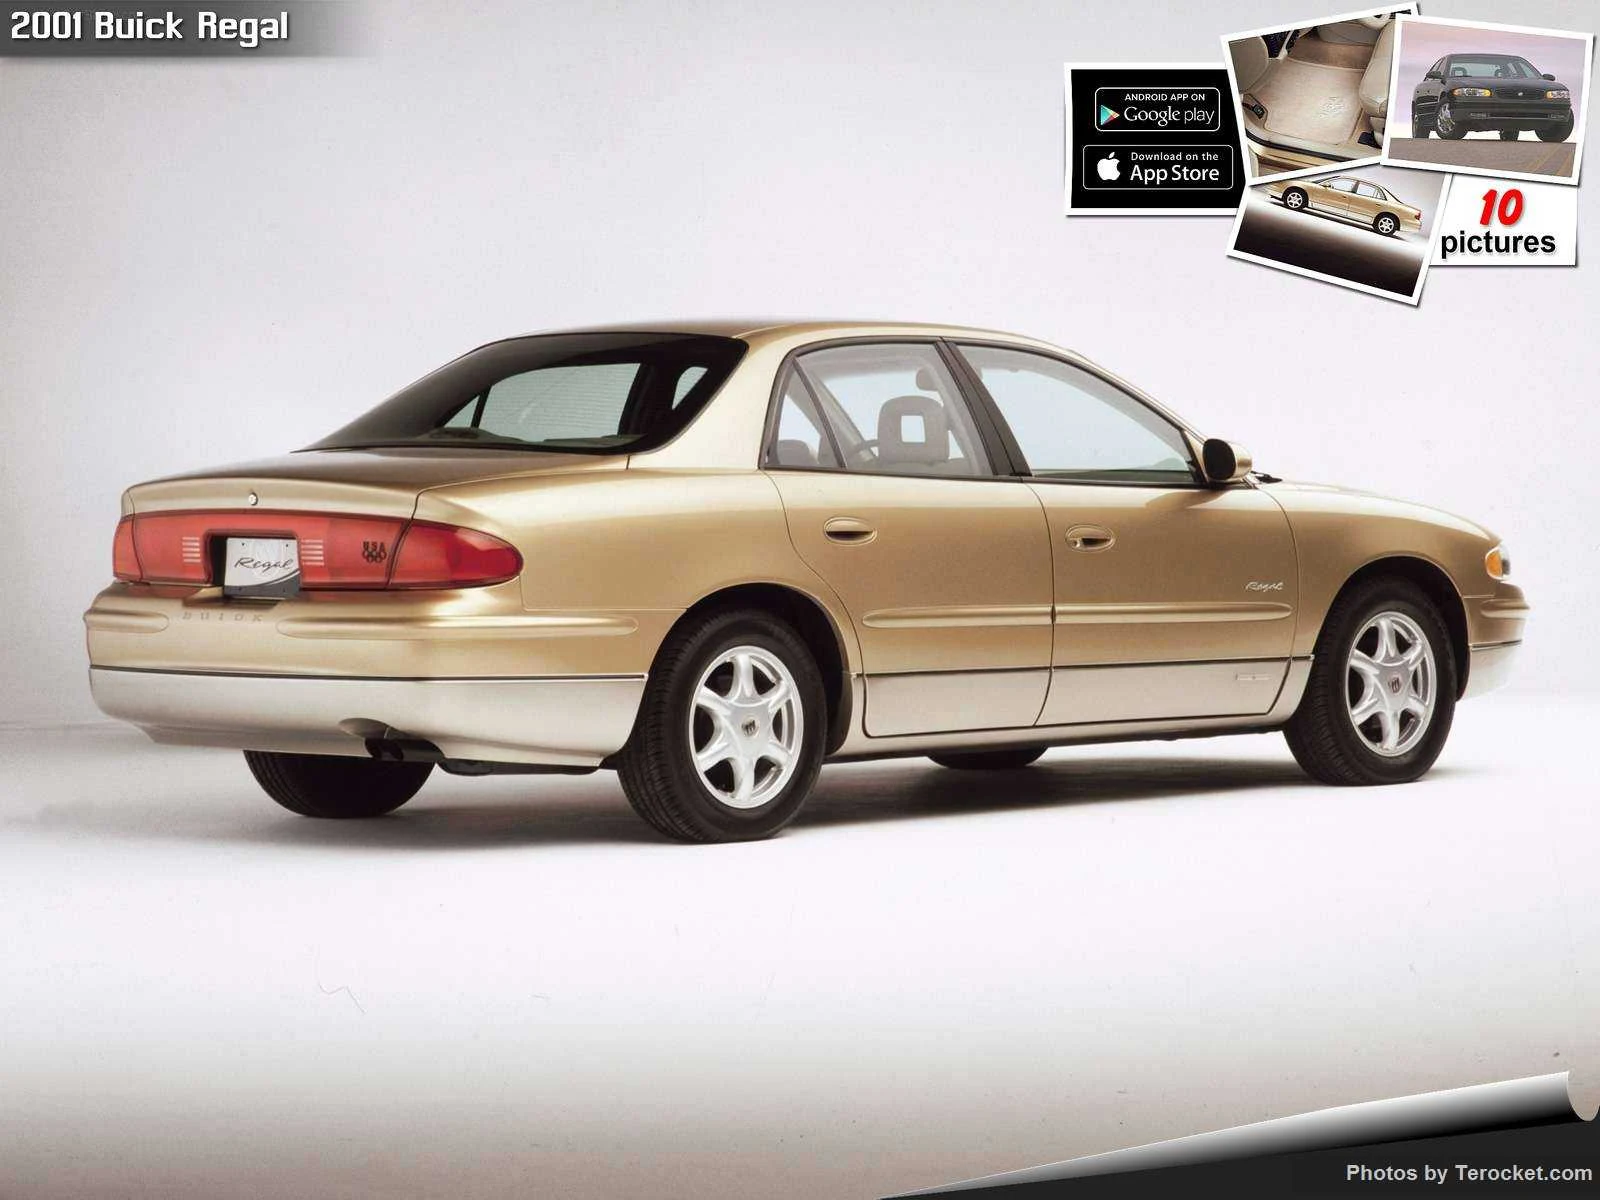 Hình ảnh xe ô tô Buick Regal 2001 & nội ngoại thất